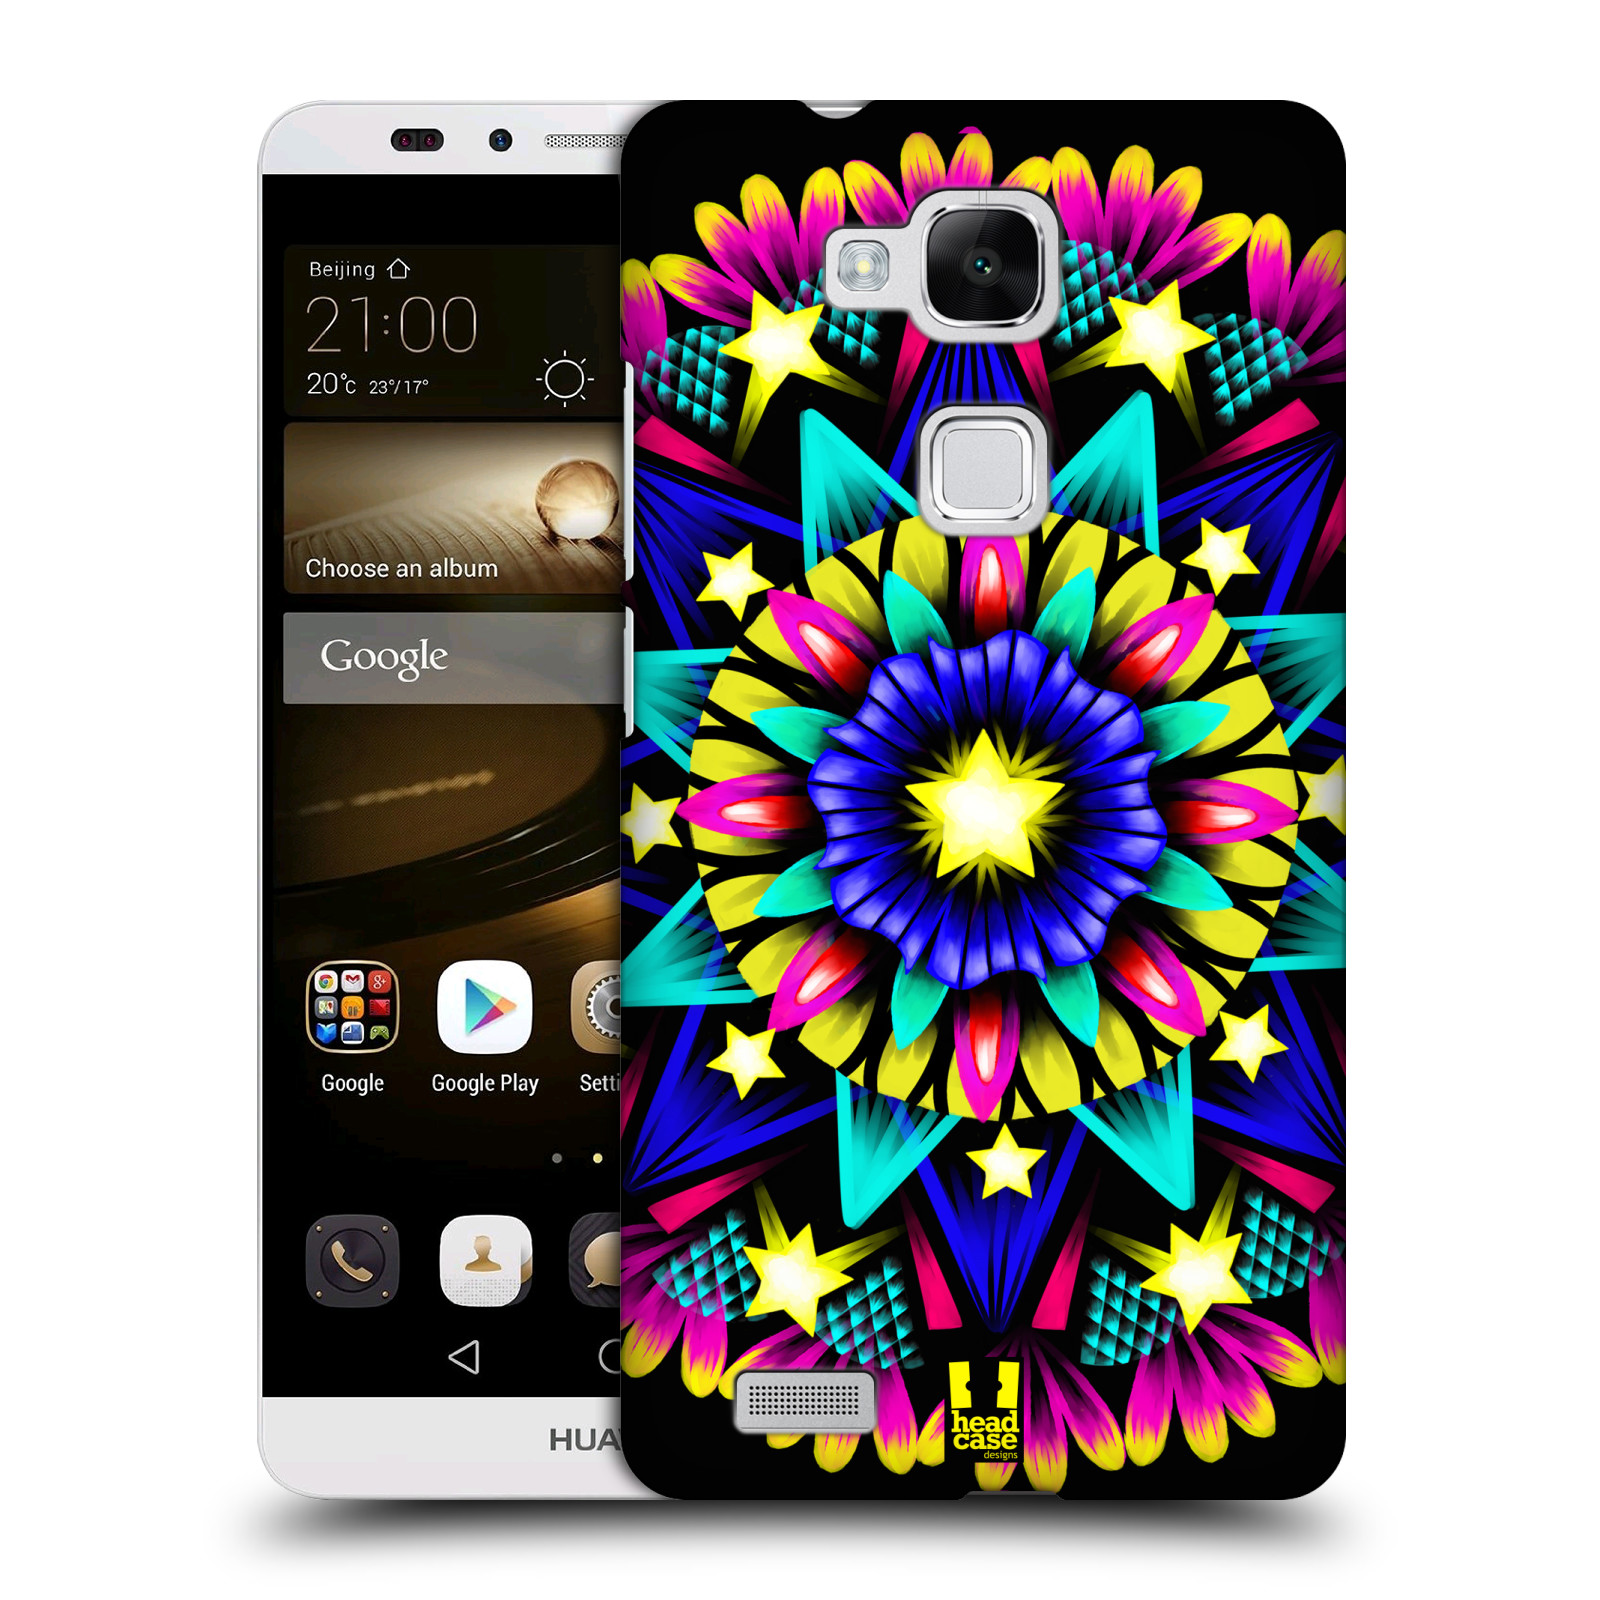 HEAD CASE plastový obal na mobil Huawei Mate 7 vzor Indie Mandala kaleidoskop barevný vzor HVĚZDA